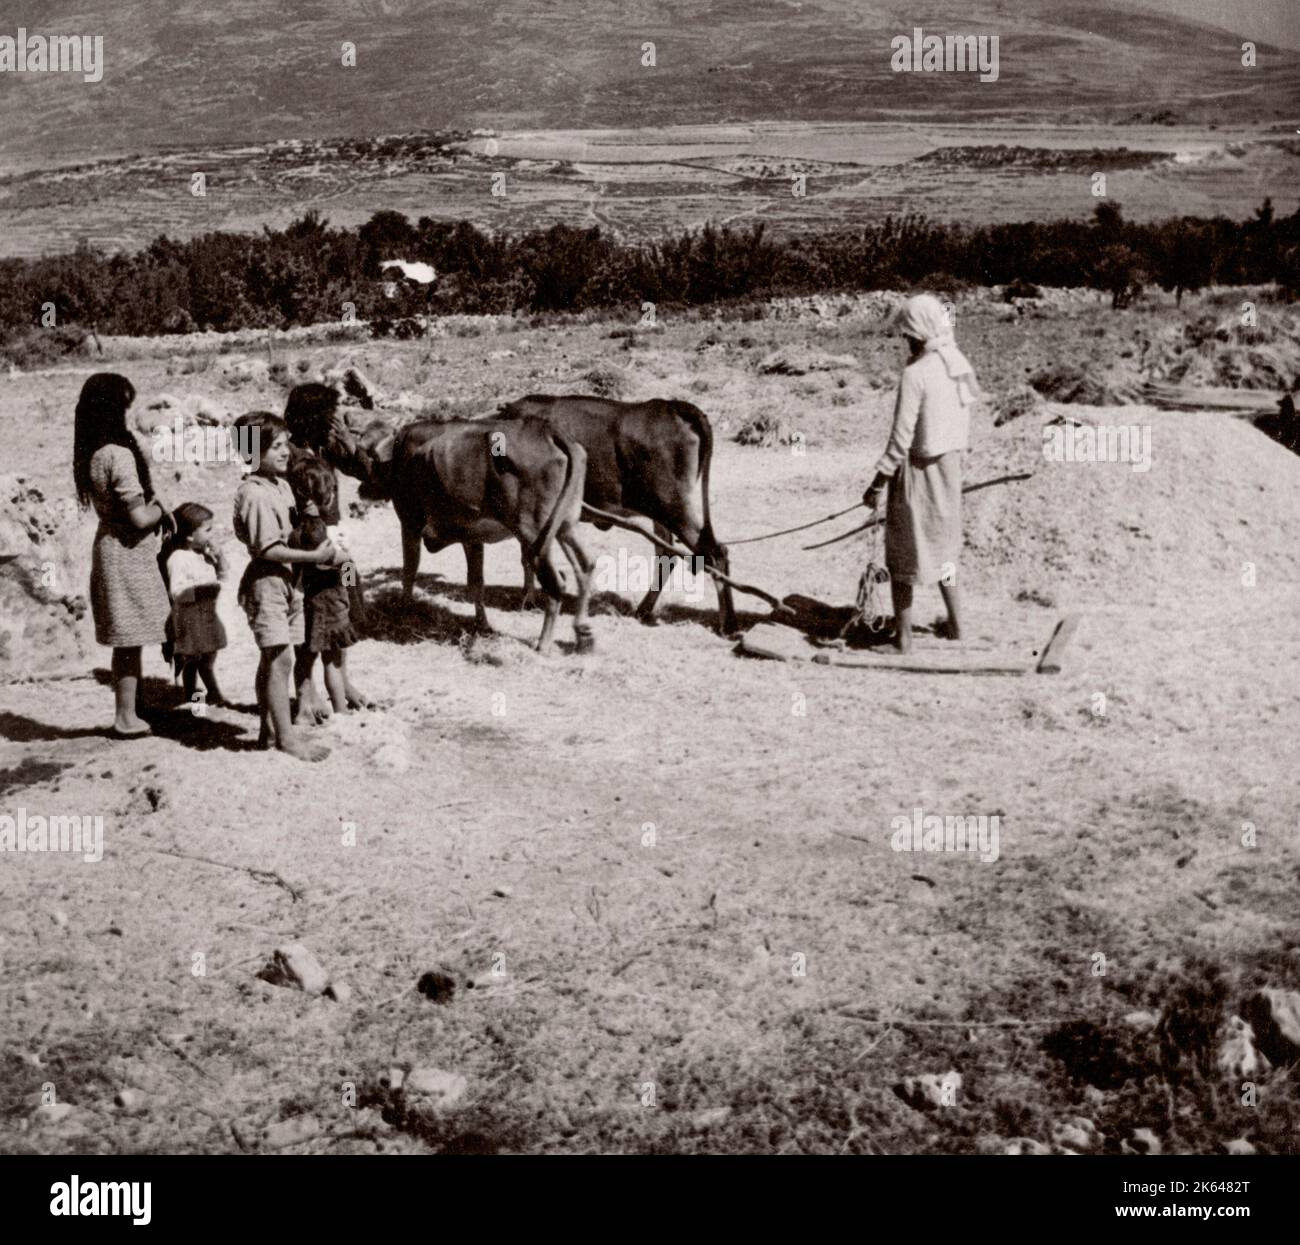 1843 - Syrie - le battage du grain avec des ânes Photographie d'un officier de recrutement de l'armée britannique stationnés en Afrique de l'est et au Moyen-Orient pendant la Seconde Guerre mondiale Banque D'Images